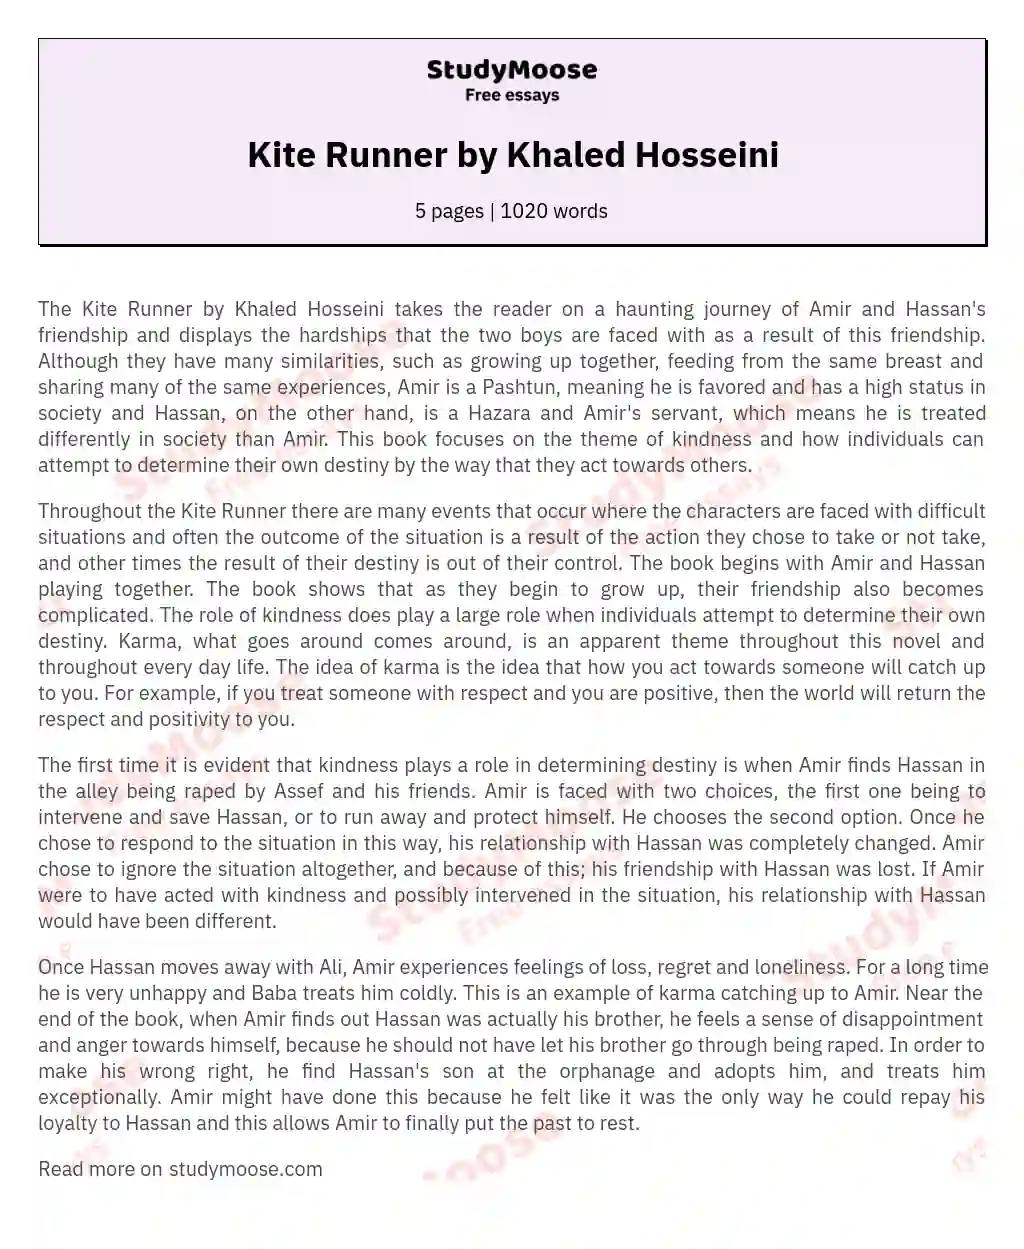 argumentative essay for kite runner